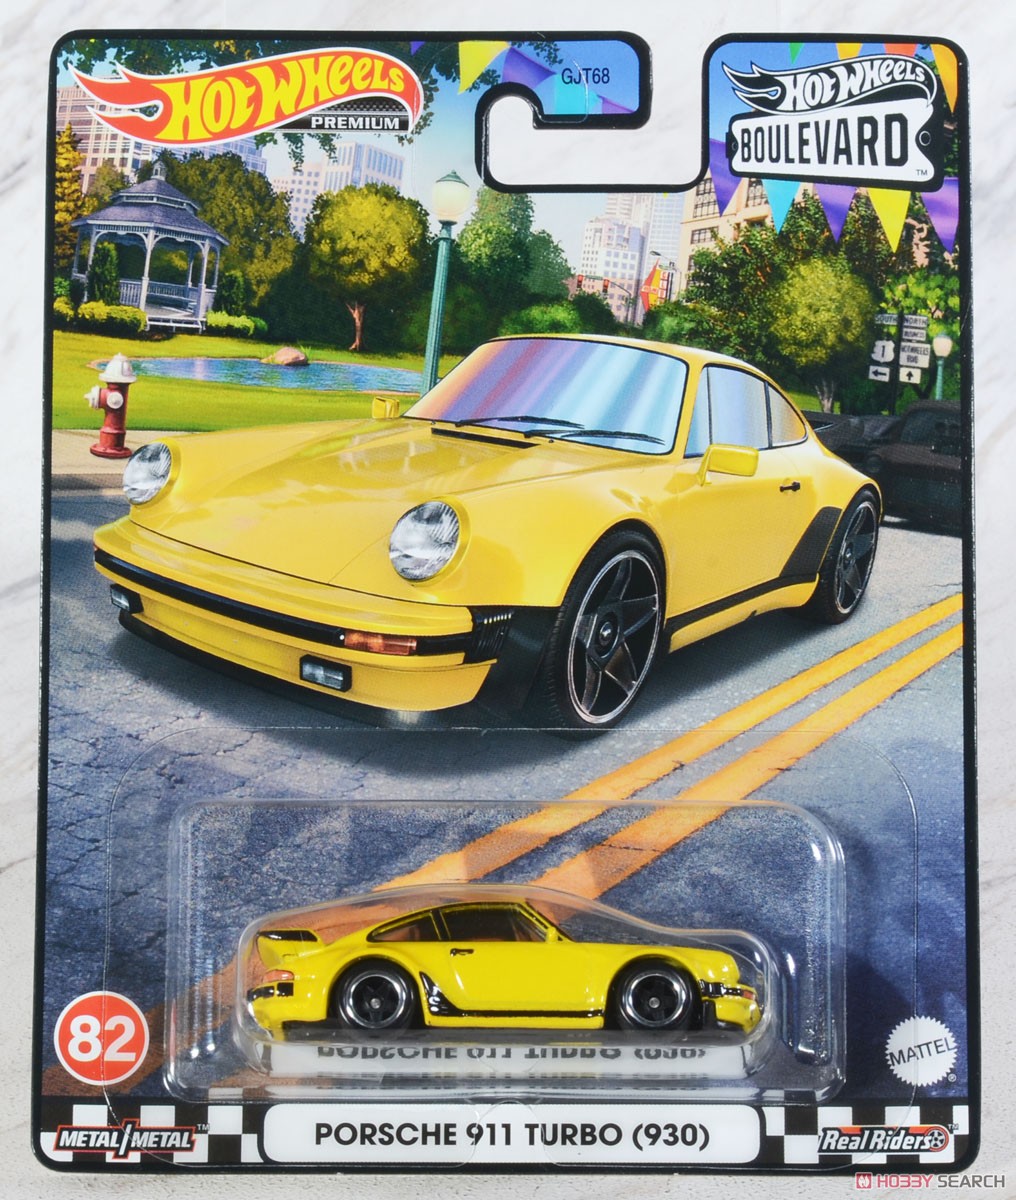 ホットウィール ブールバード - ポルシェ 911 ターボ (930) (玩具) パッケージ2